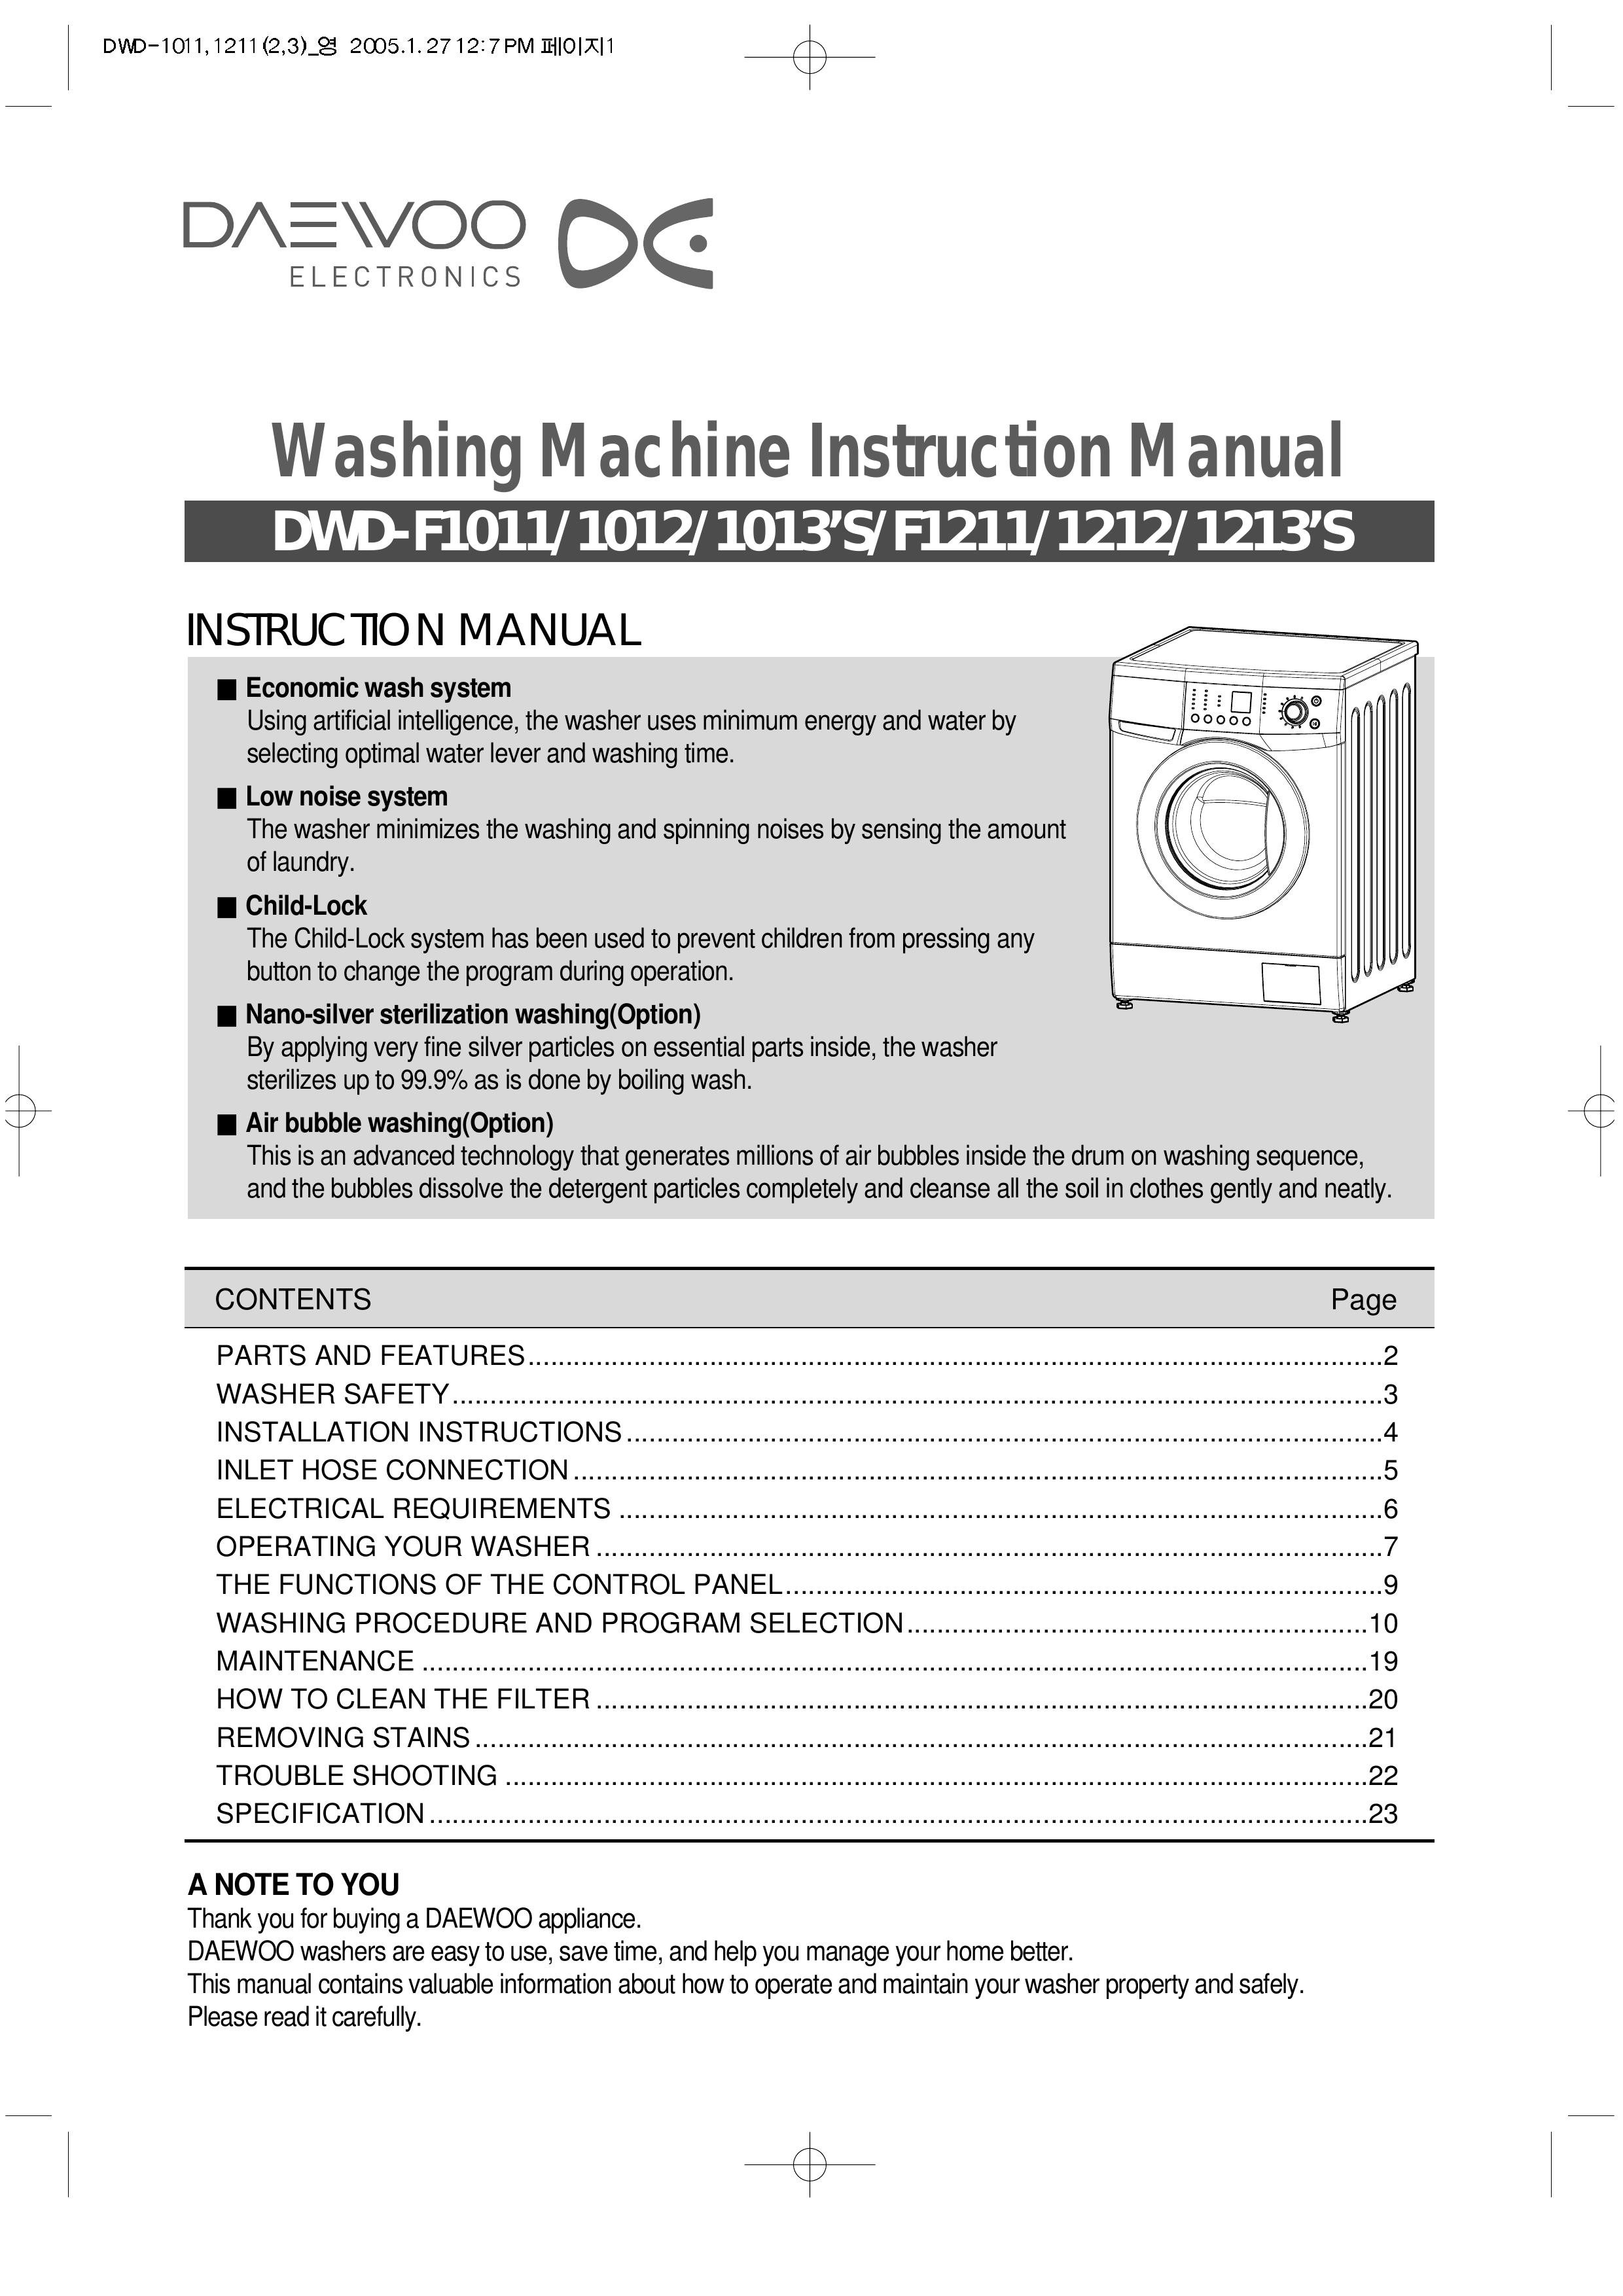 Daewoo DWD-F1211 Washer User Manual